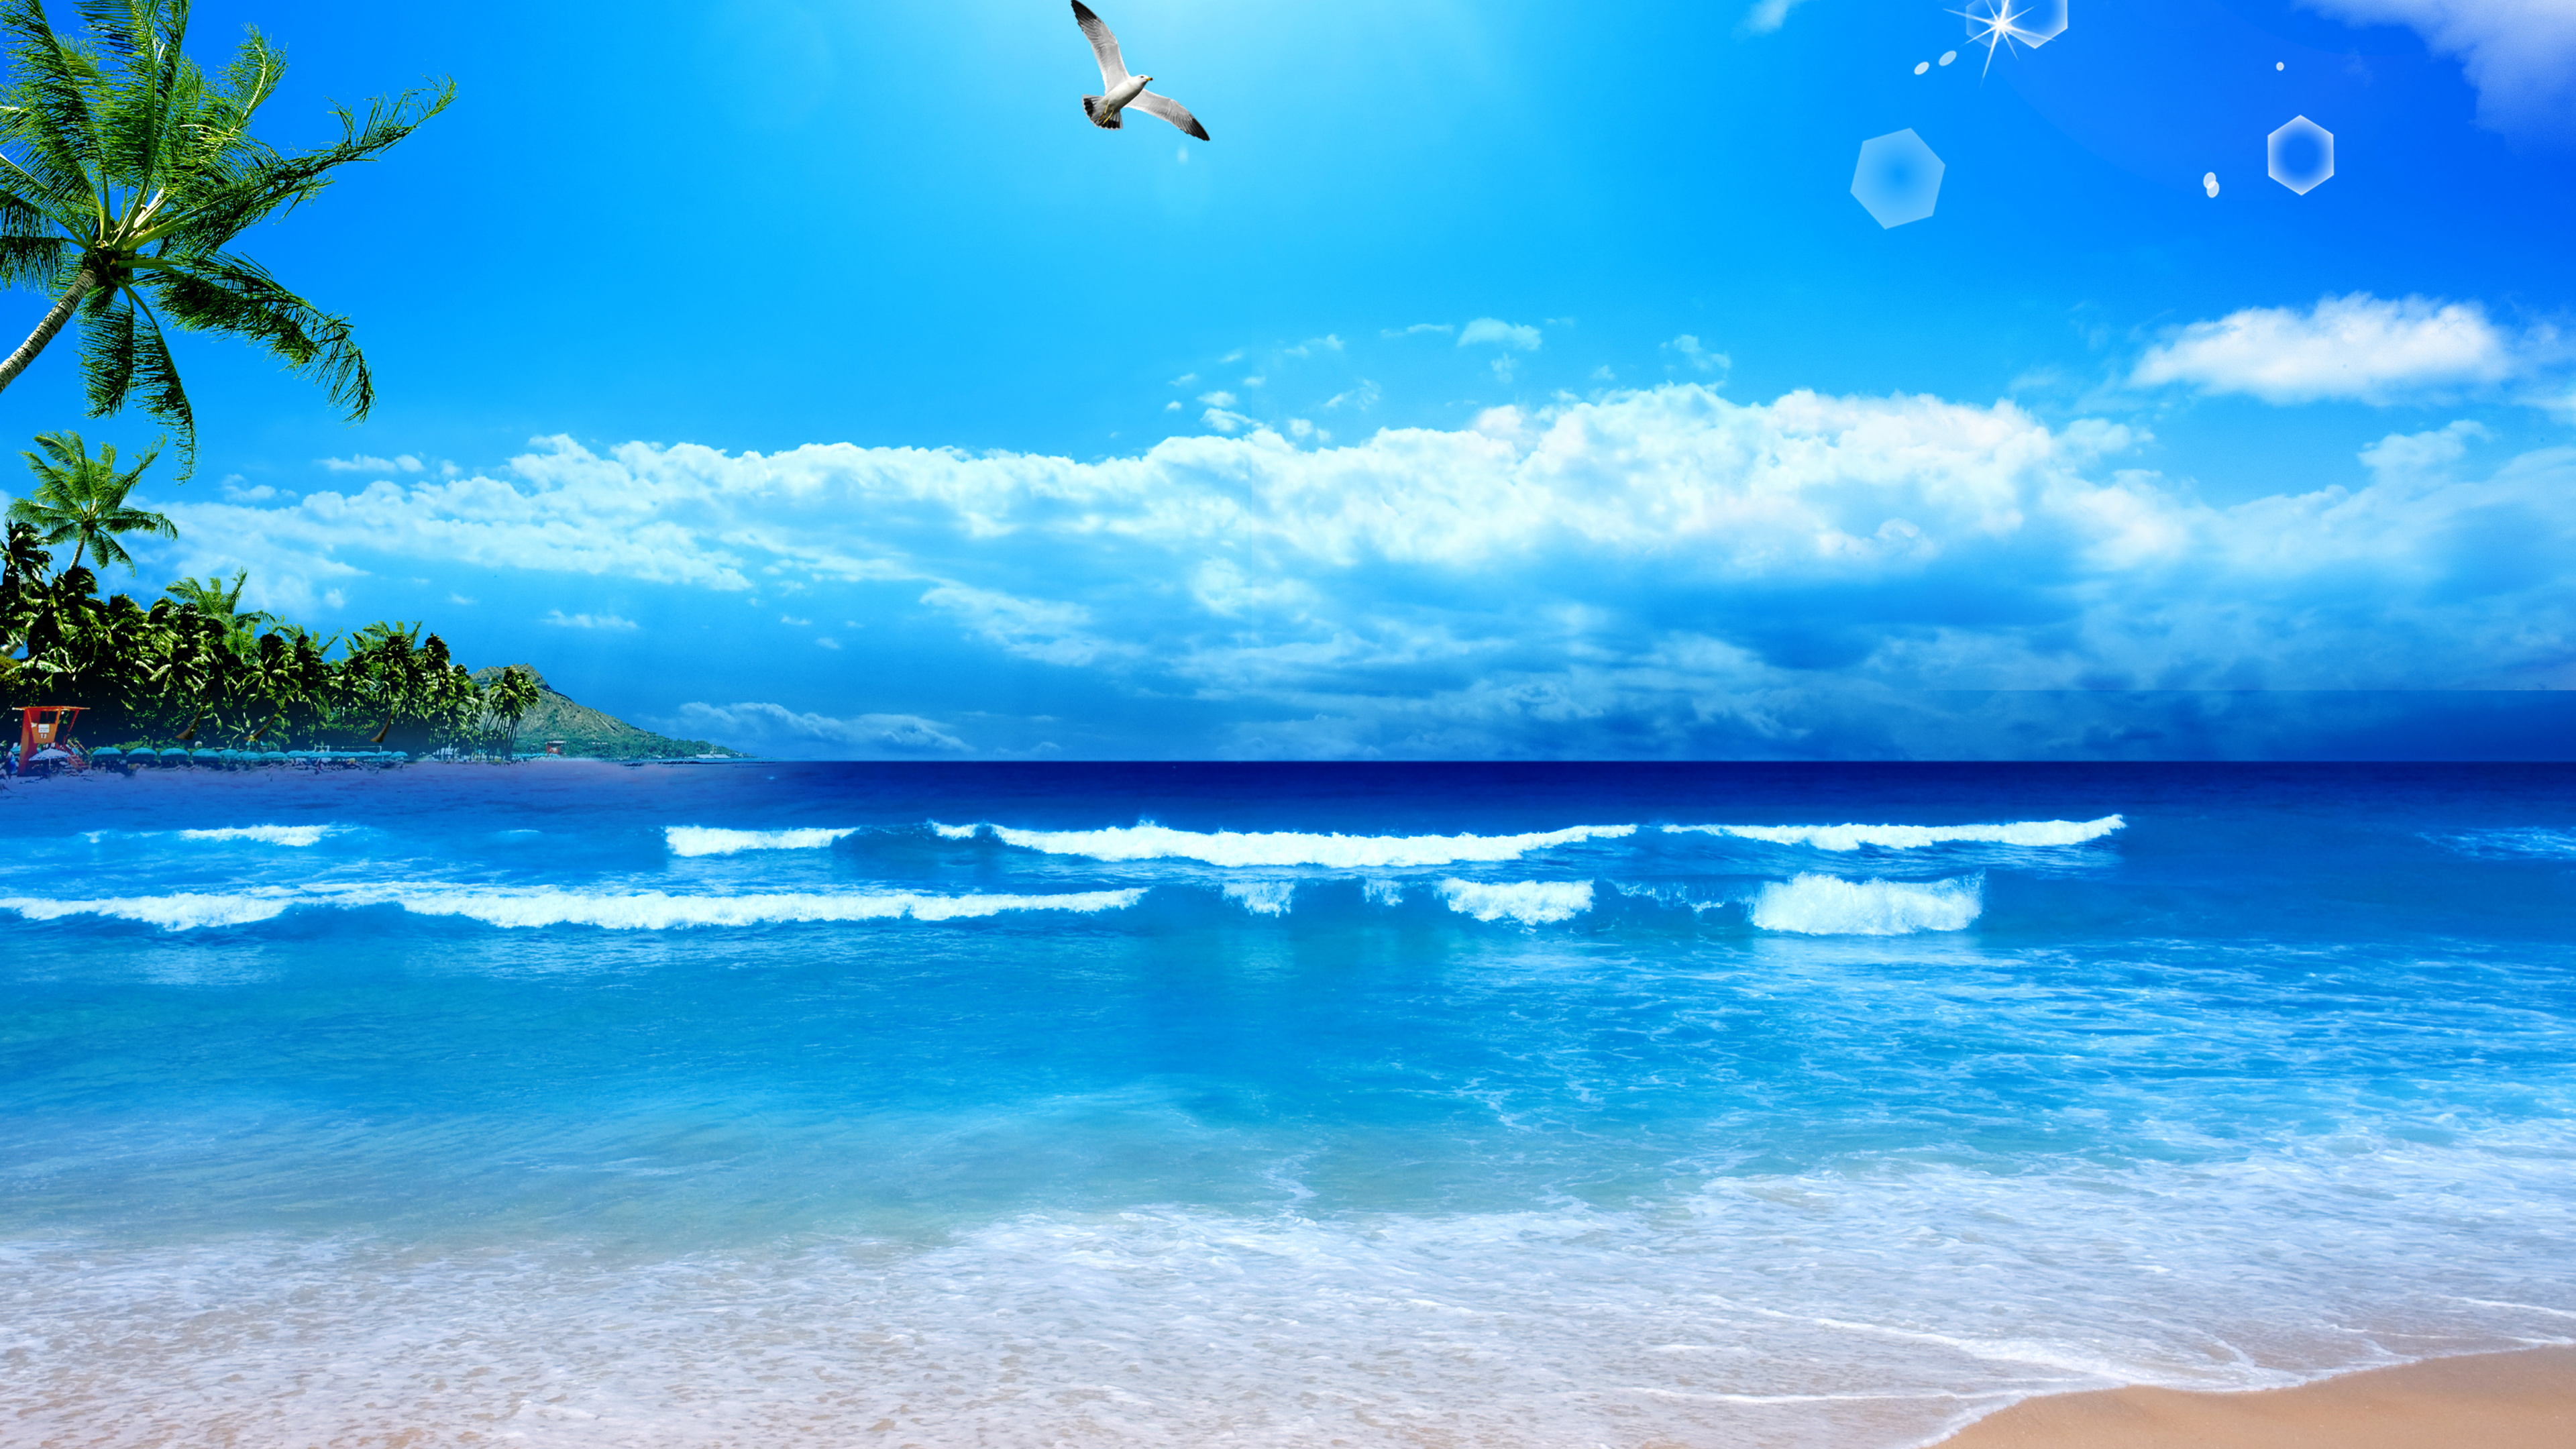 Gewässer, Ozean, Natur, Meer, Blau. Wallpaper in 3840x2160 Resolution